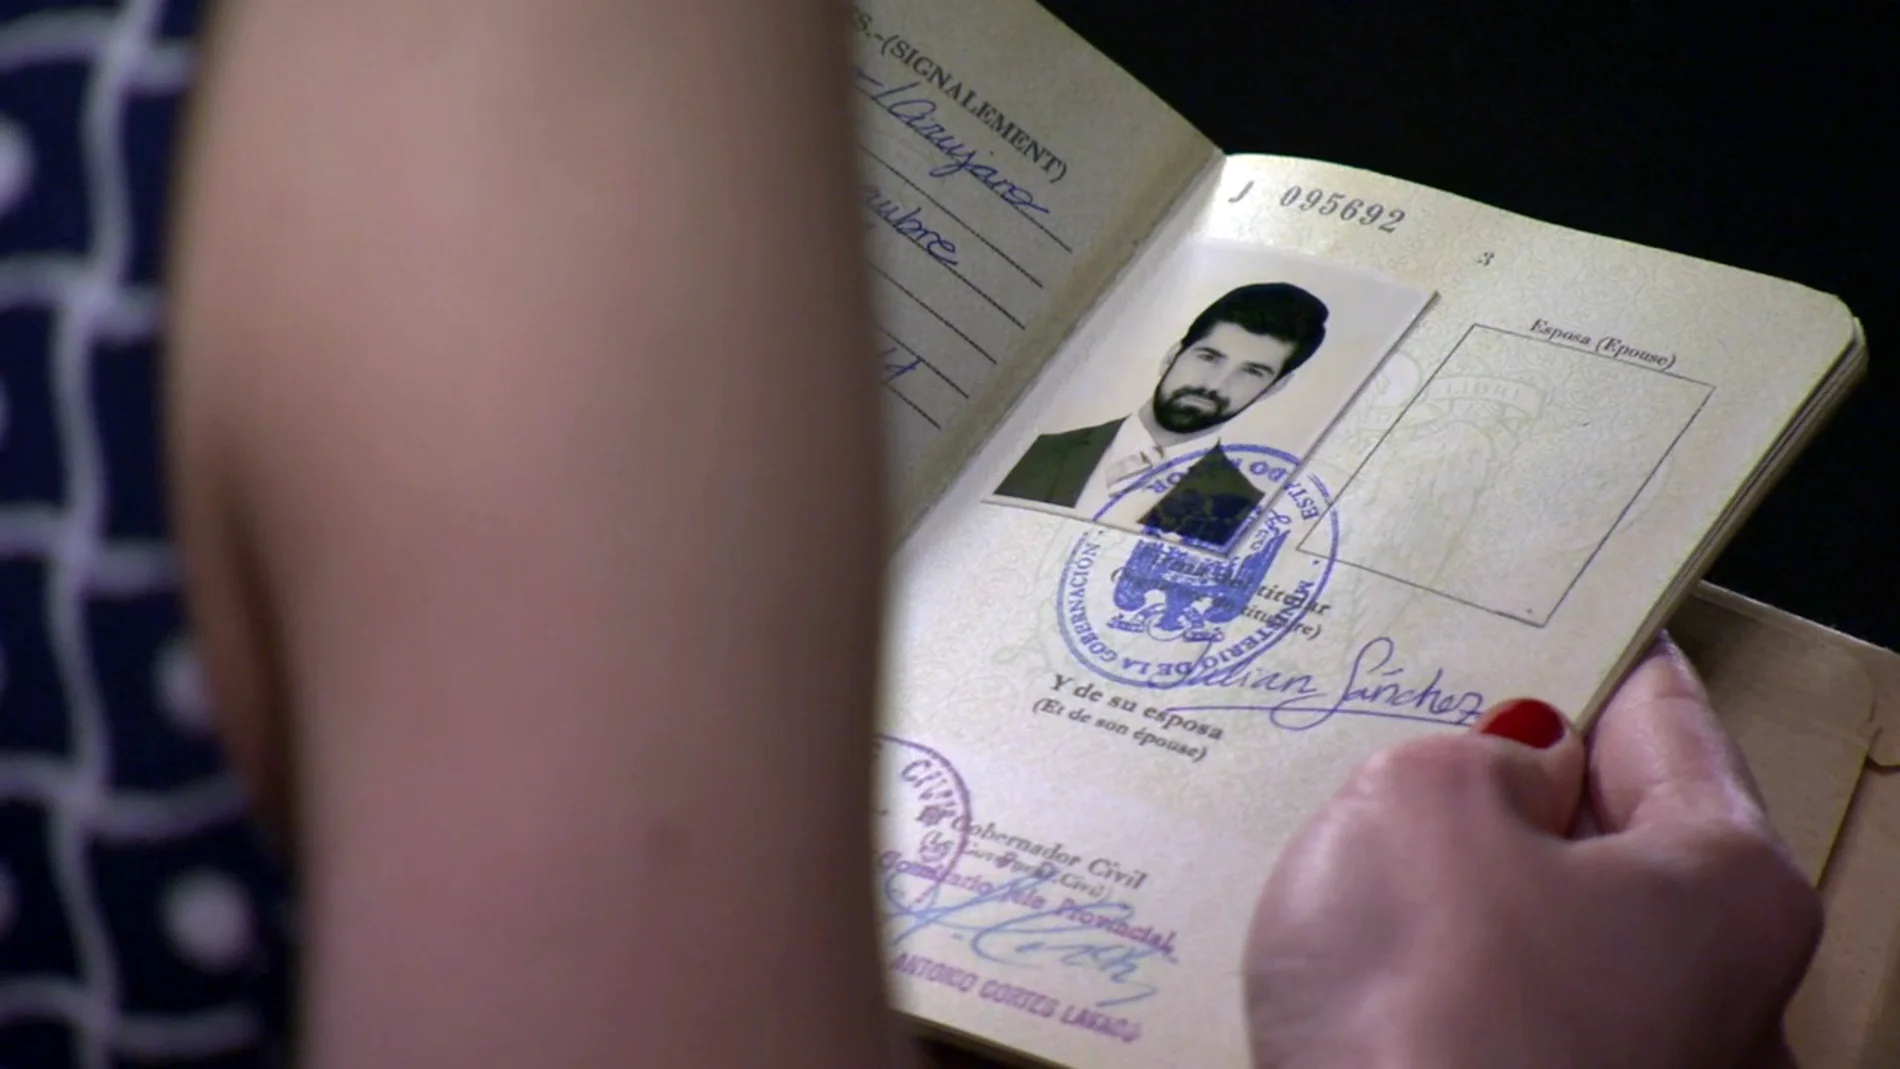 María descubre el pasaporte falso de Alonso